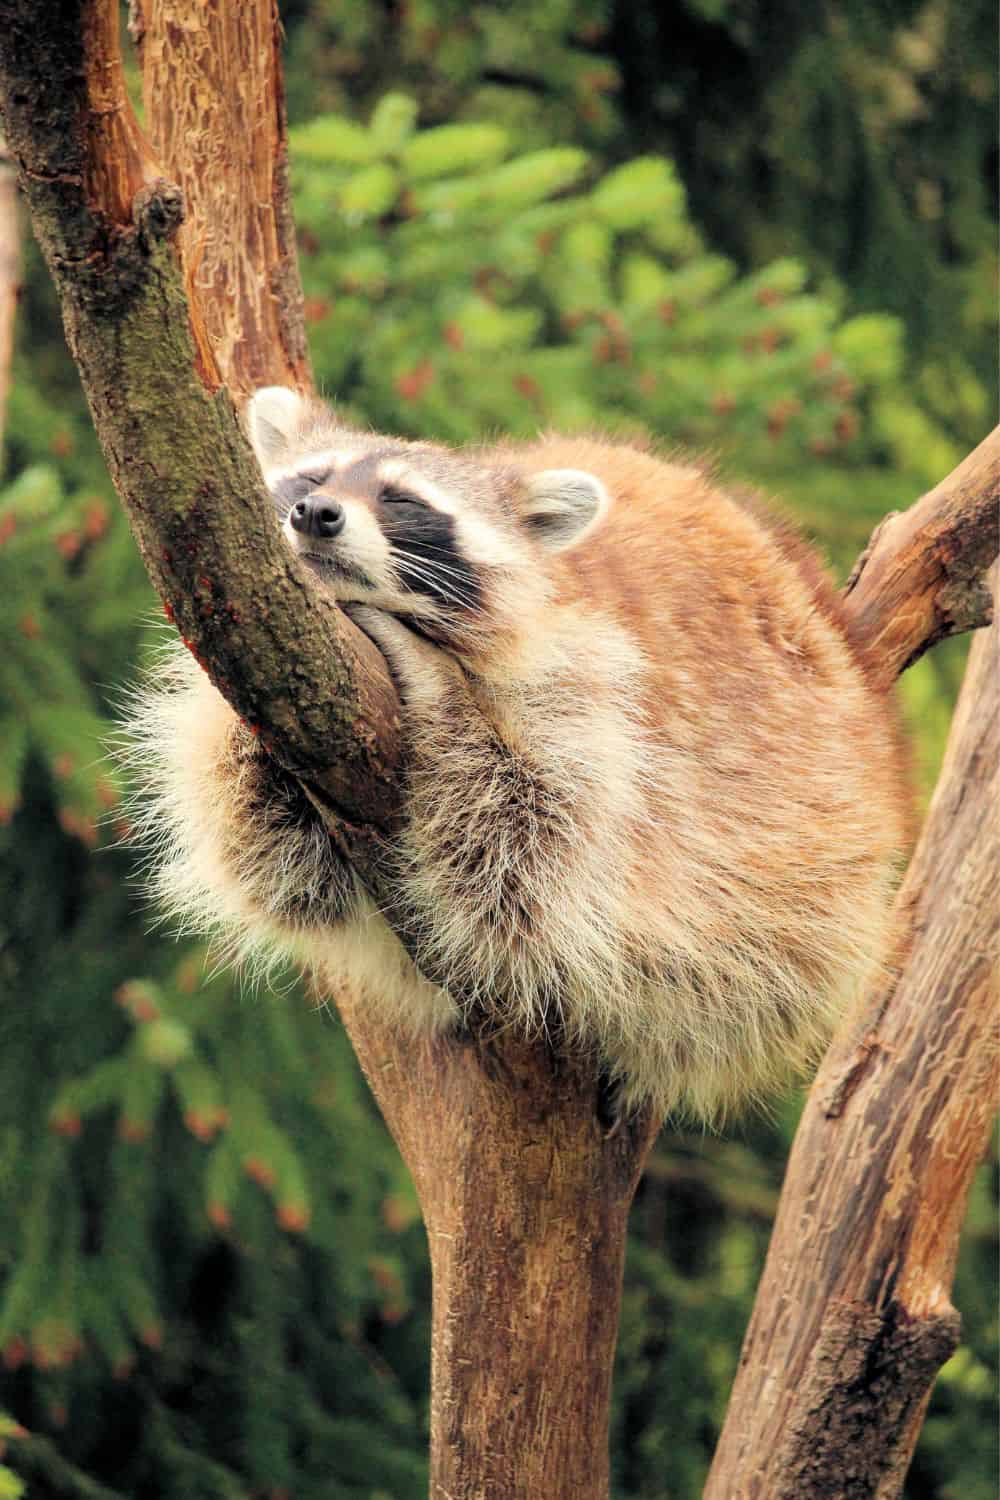 Raccoons’ sleeping habits